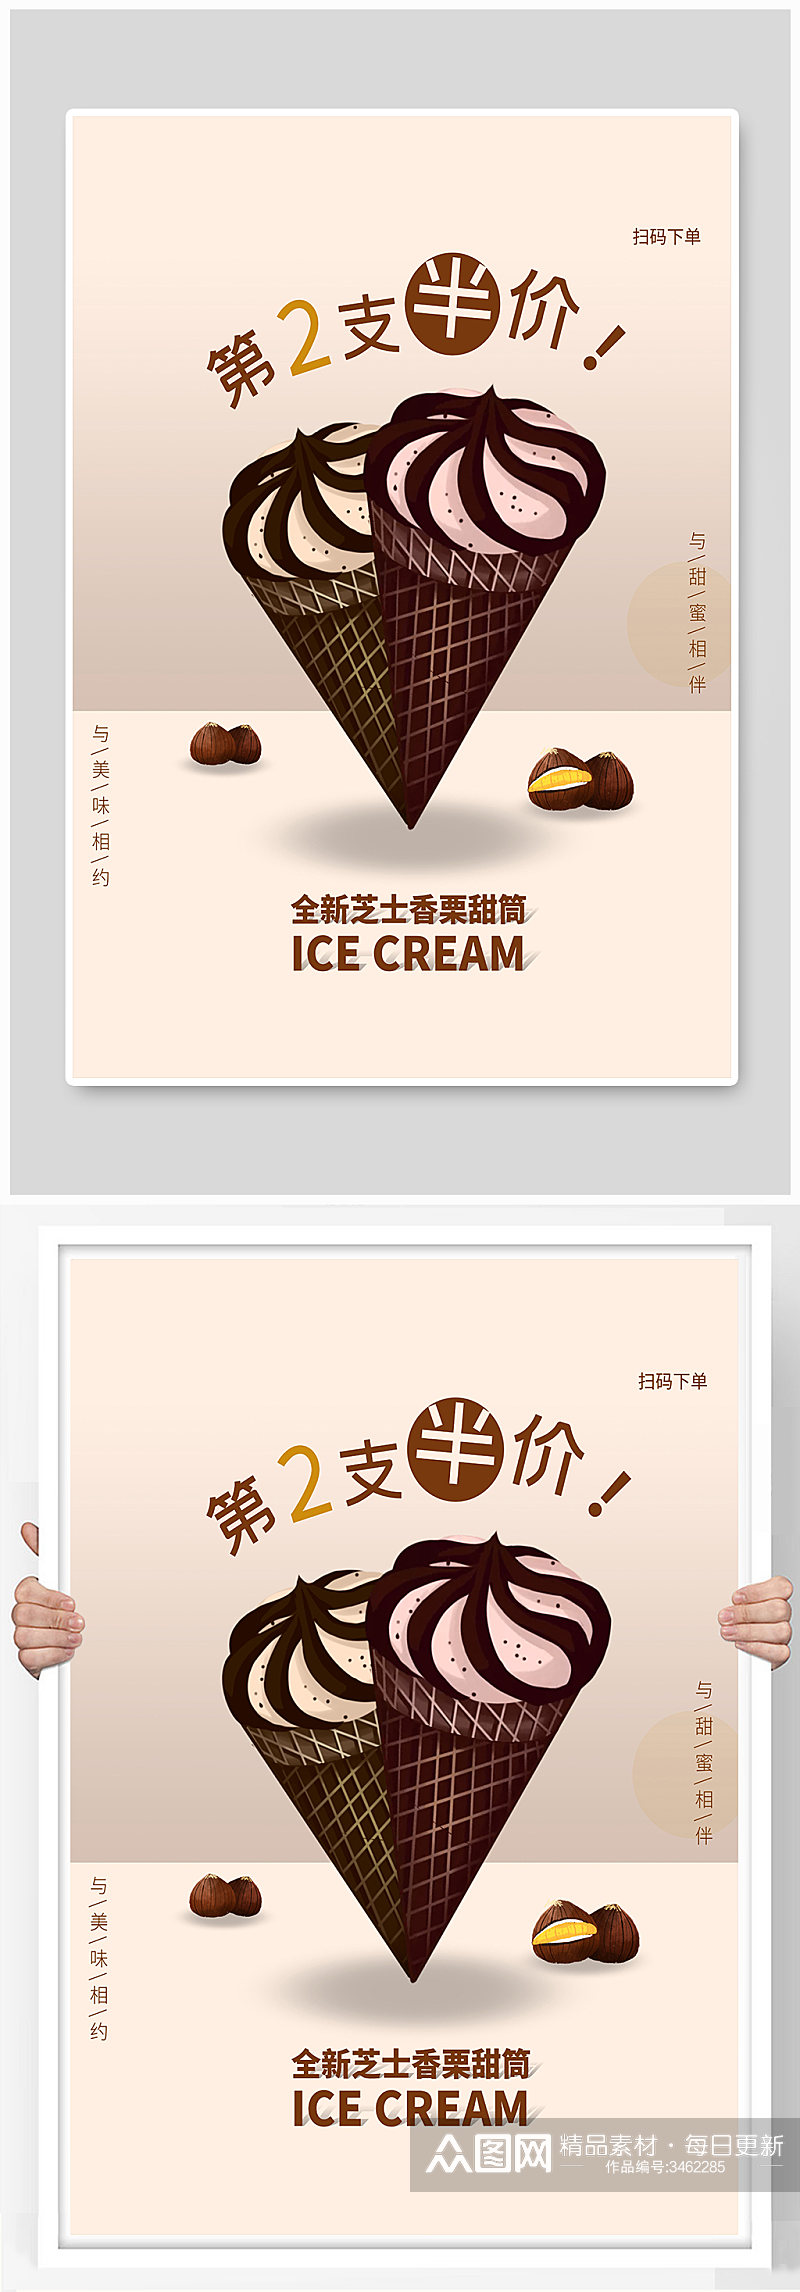 冰淇淋雪糕甜品宣传海报设计素材